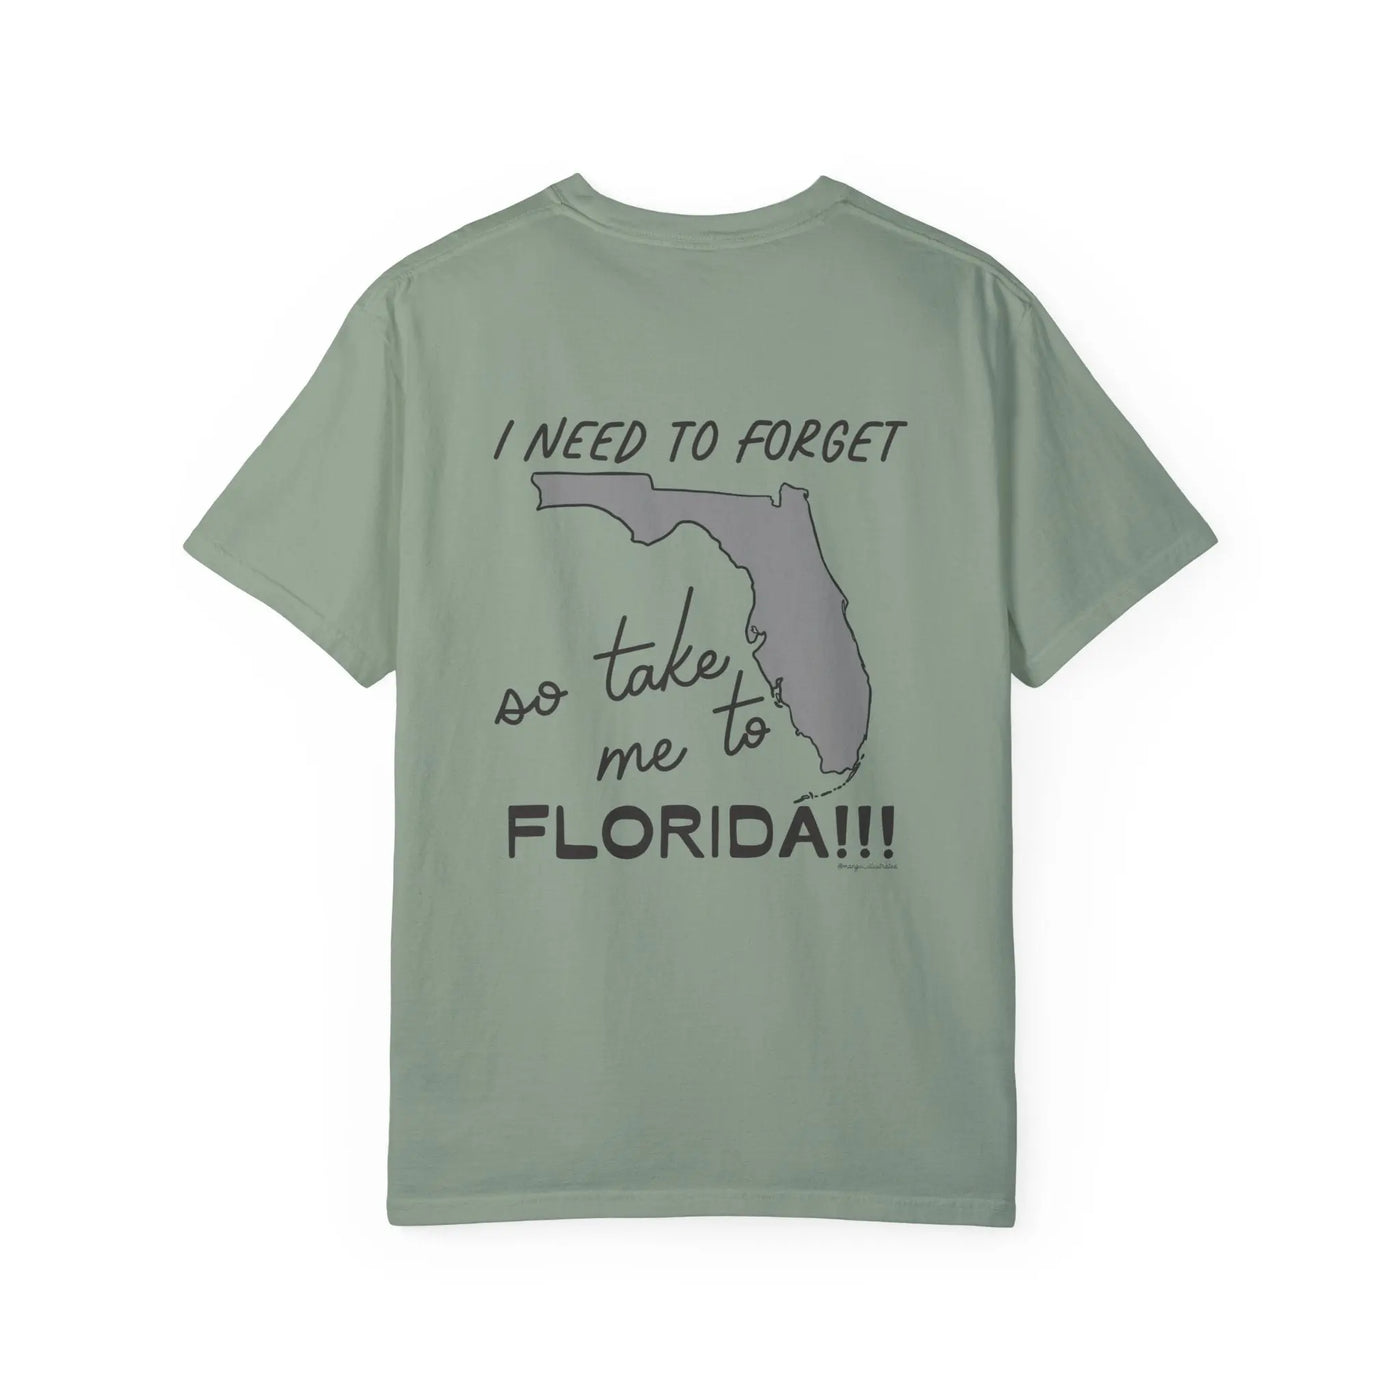 FLORIDA!!! tshirt Printify